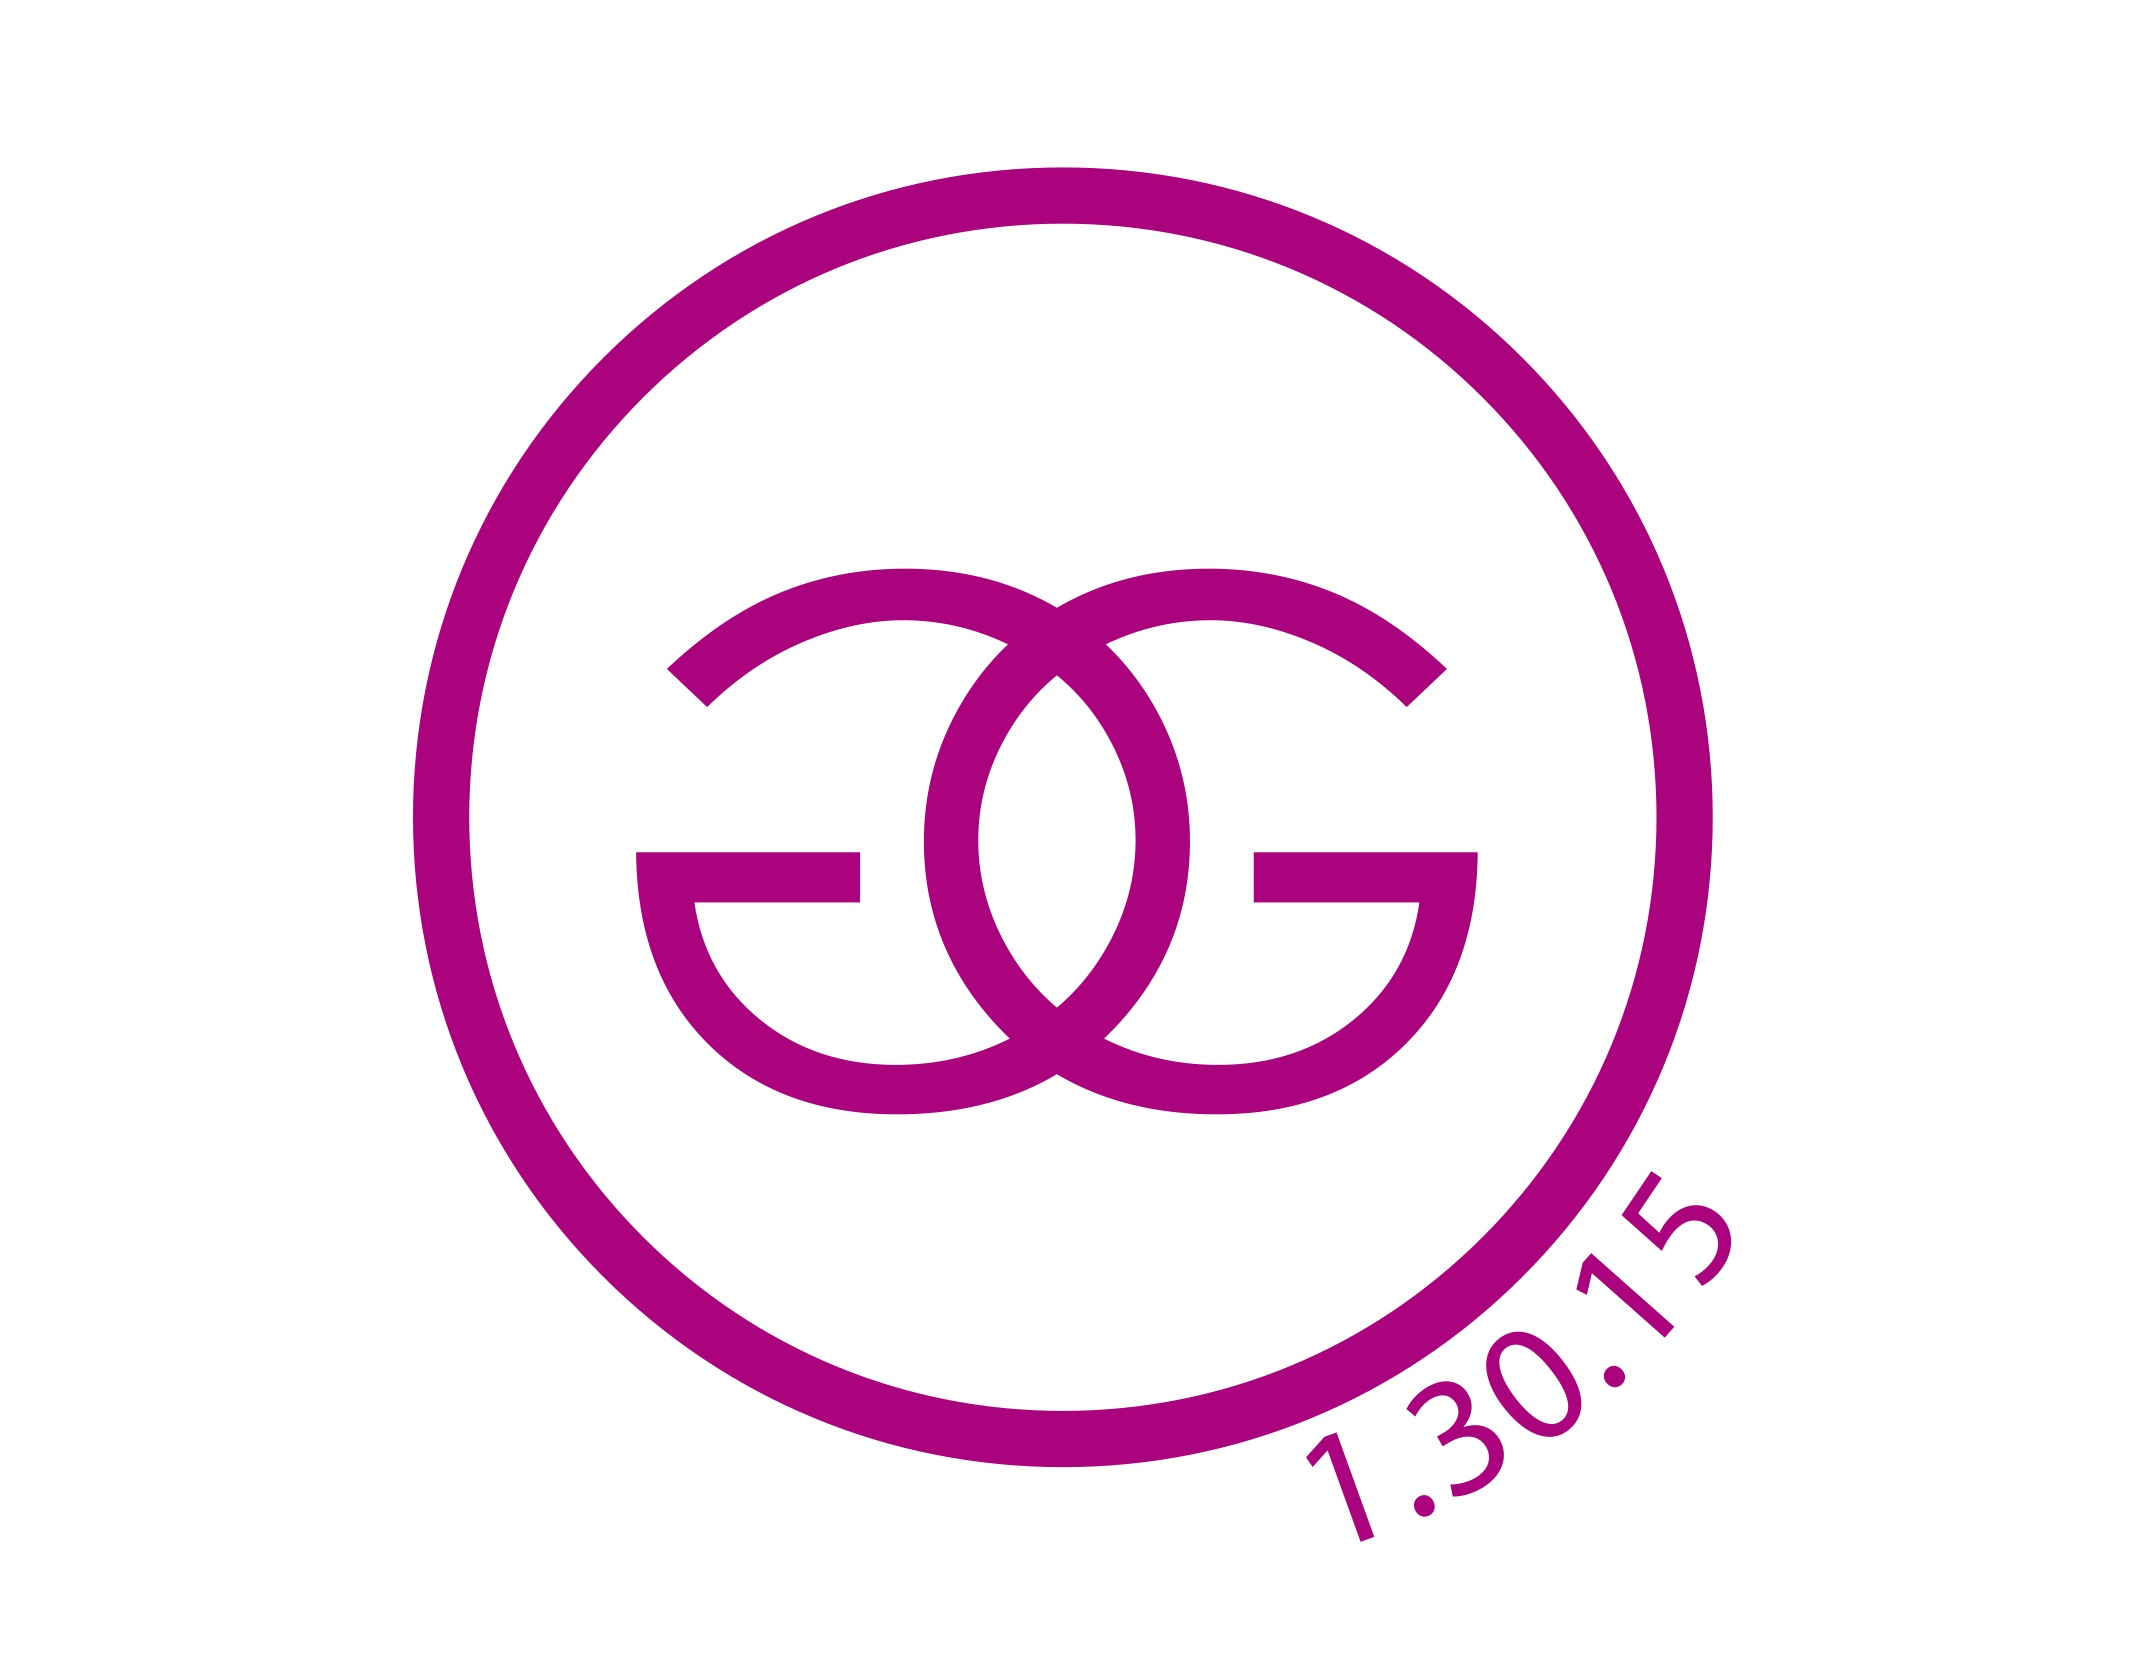 GG Circle Date Logo